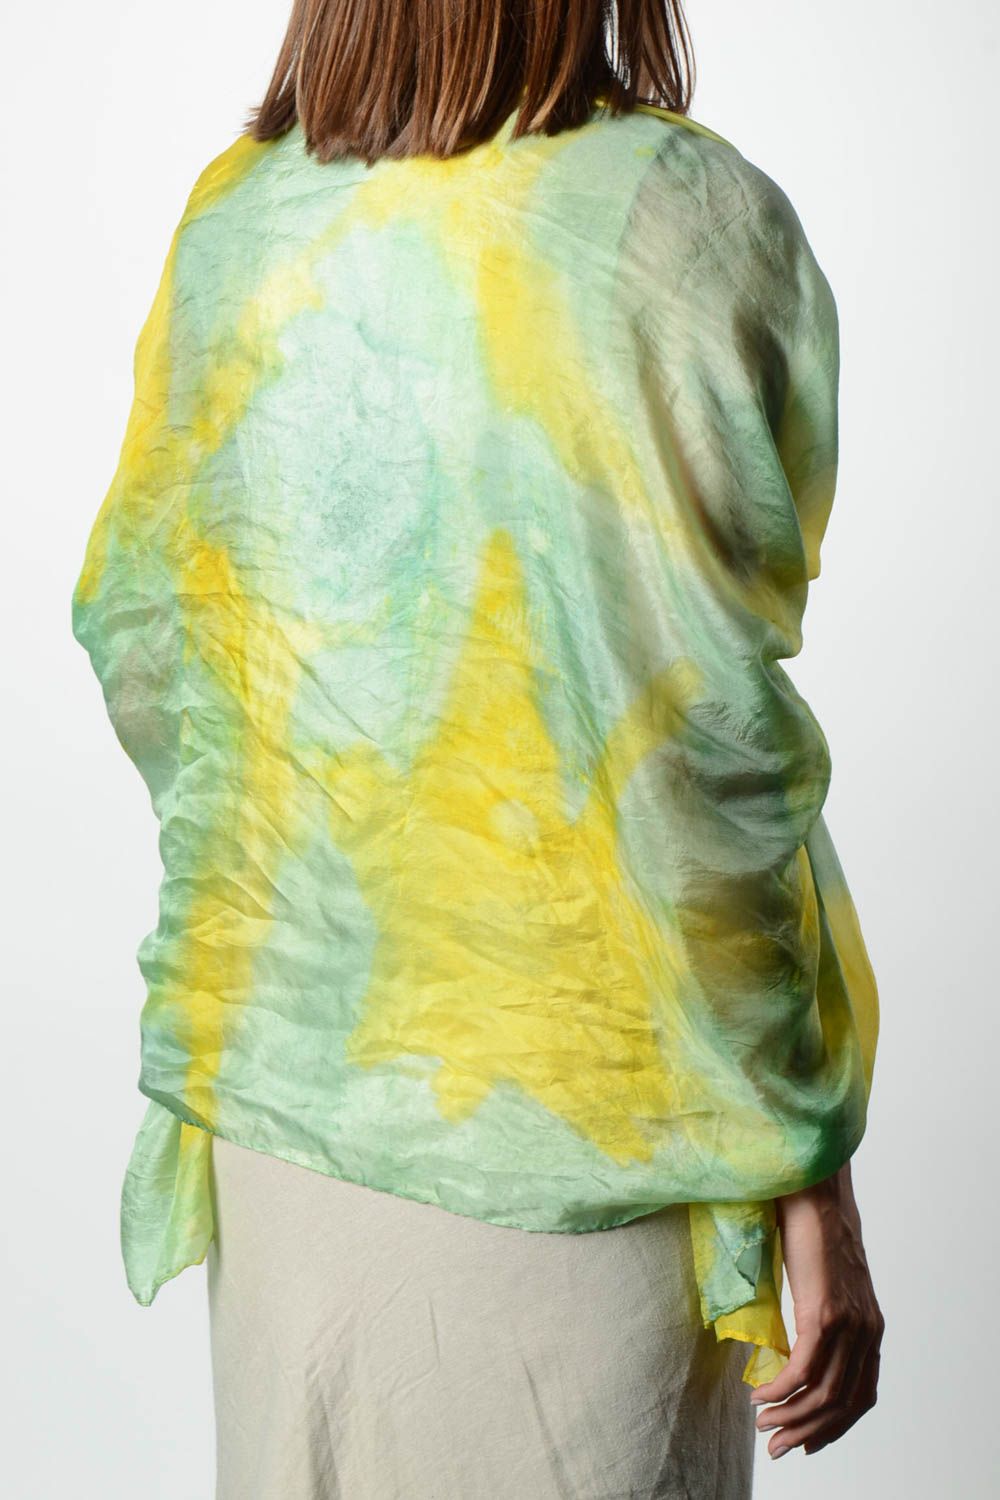 Платок ручной работы платок из шелка женский аксессуар в технике батик фото 2